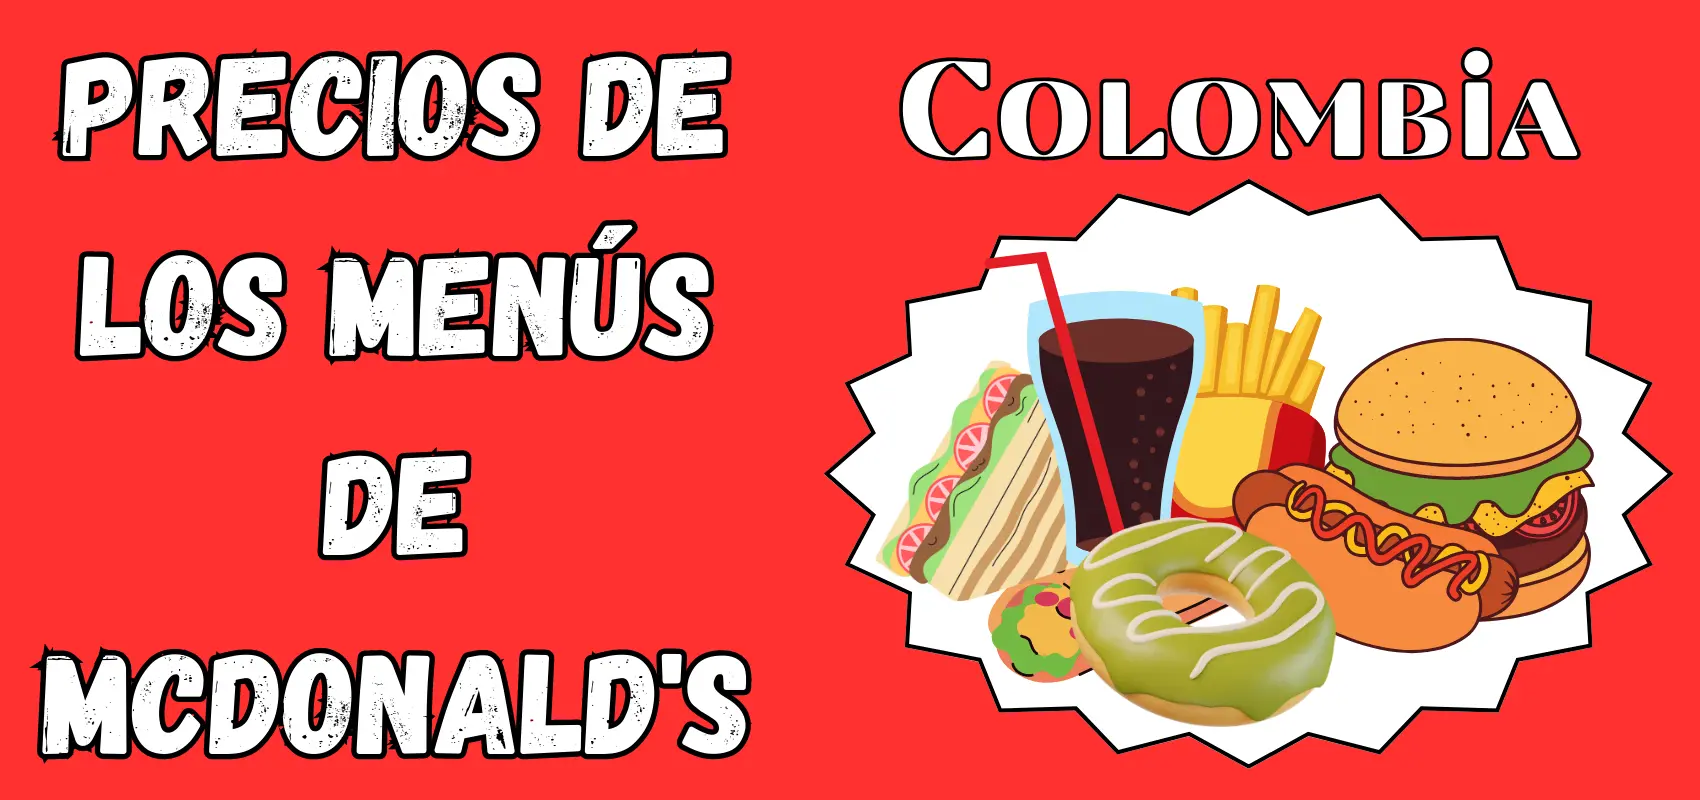 Mcdonald's Menu Precios Colombia